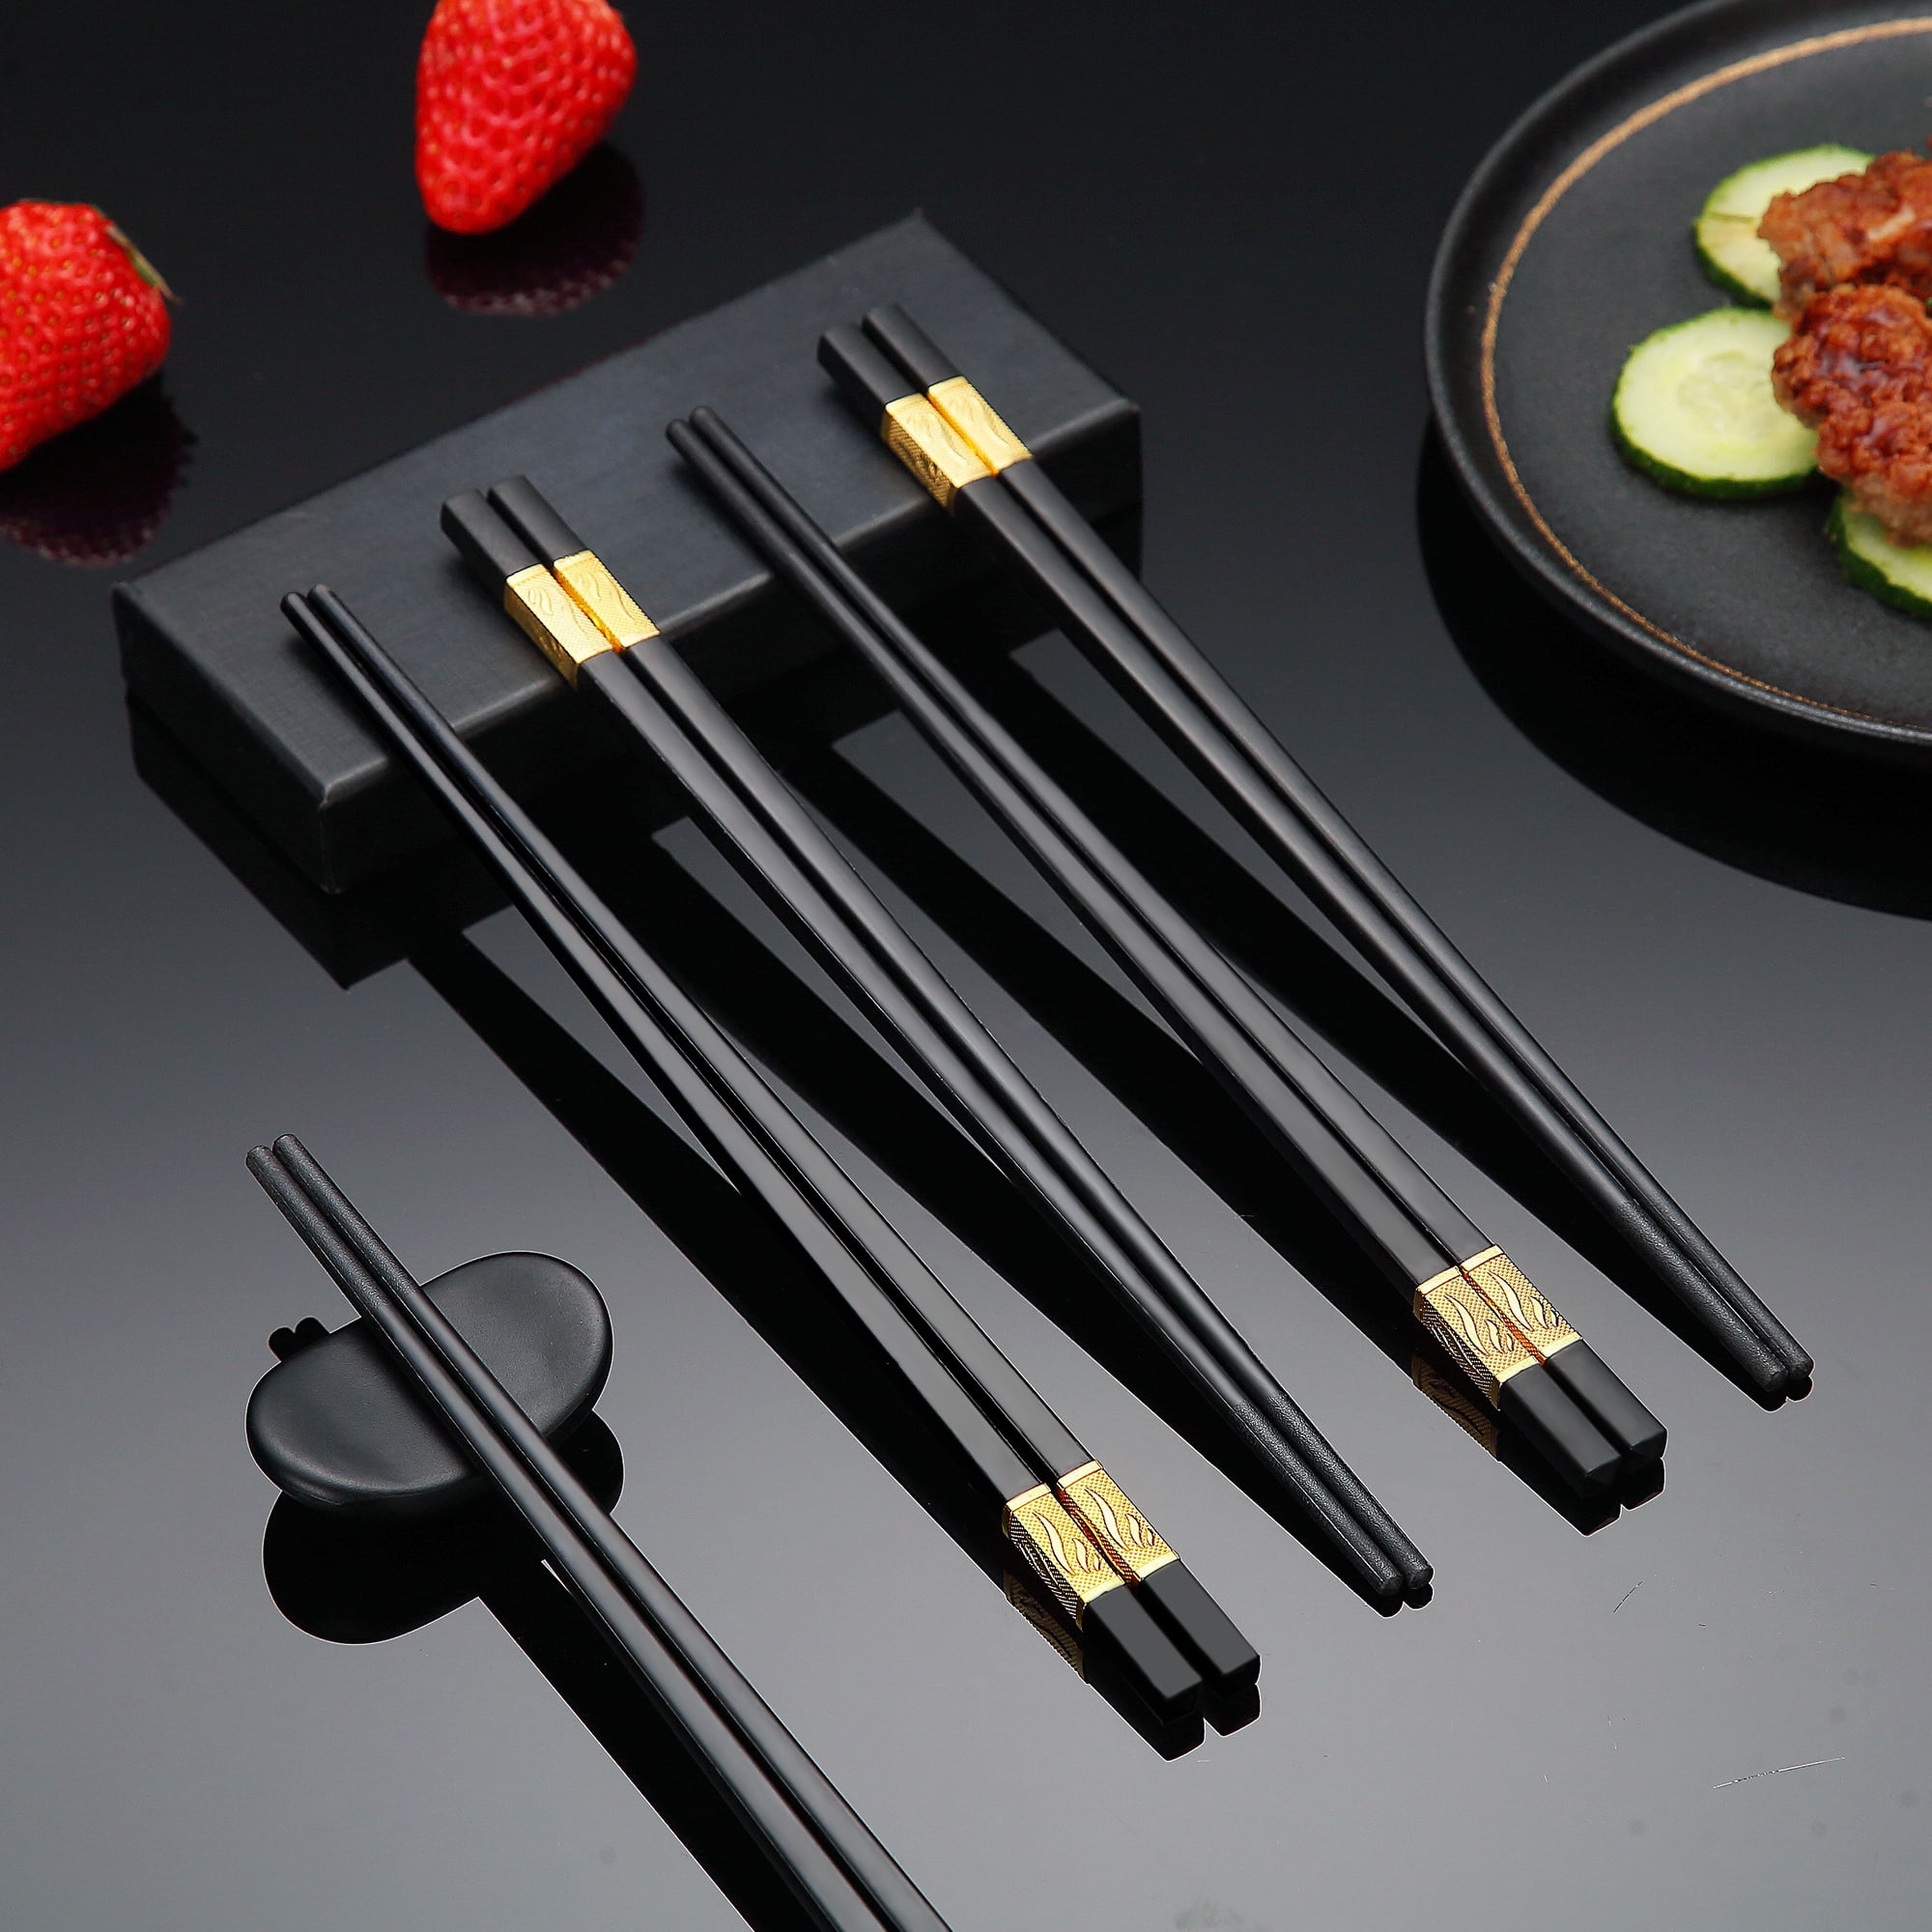 Chopsticks, fiberglass chopsticks are reusable, with chopstick rest,  dishwasher safe. Chinese luxury…See more Chopsticks, fiberglass chopsticks  are